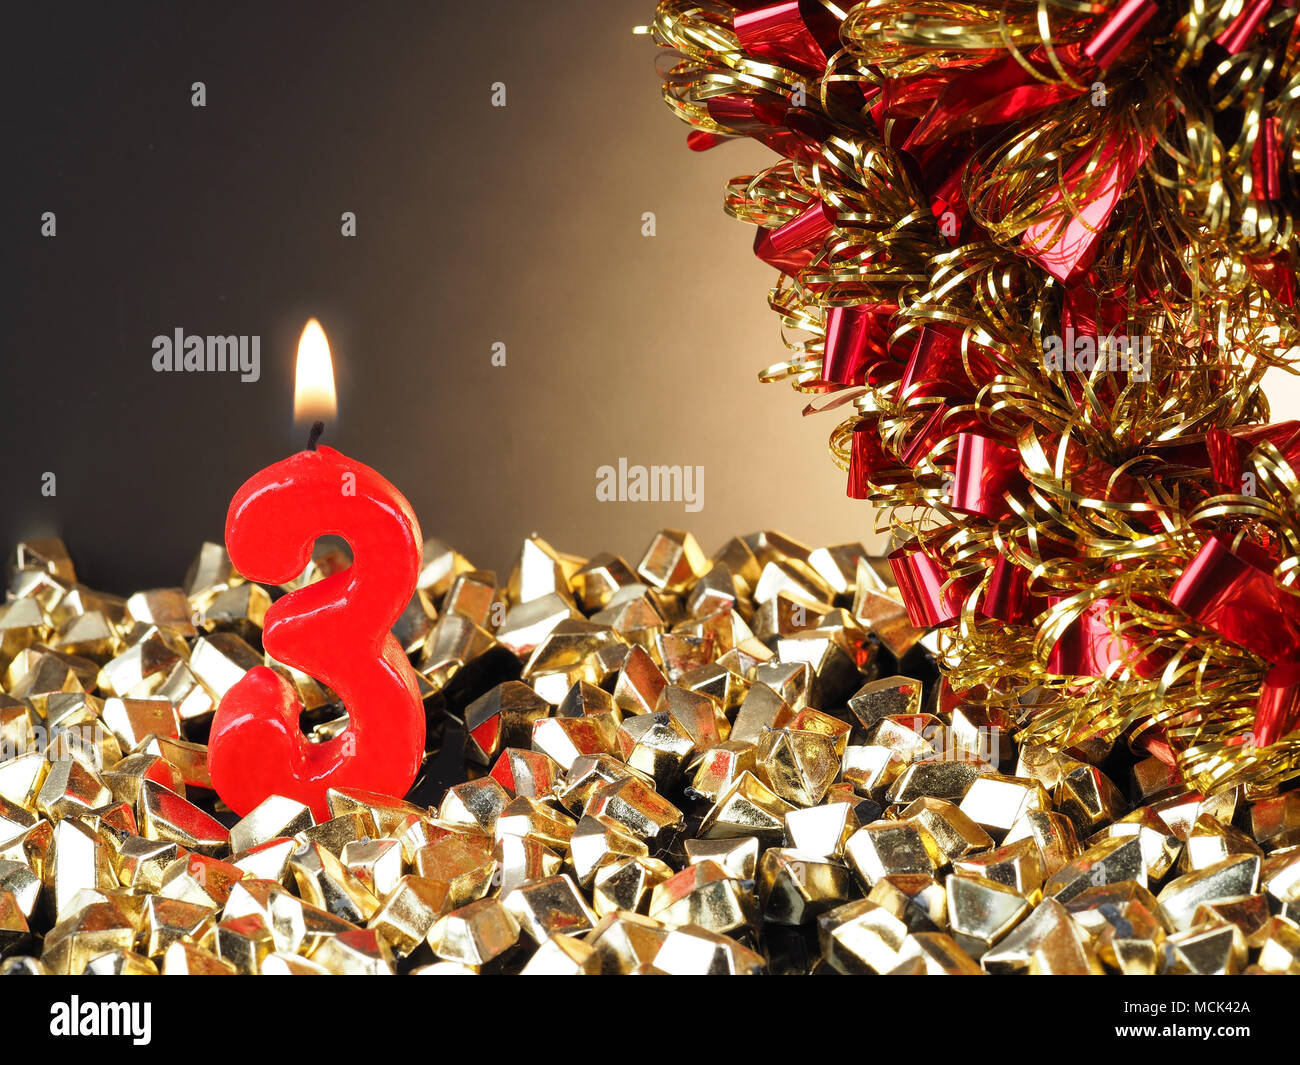 Aniversario Cumpleaños mostrando Nr. 3 Enciende una vela vela roja, bueno para un aniversario o cumpleaños de fondo. Foto de stock